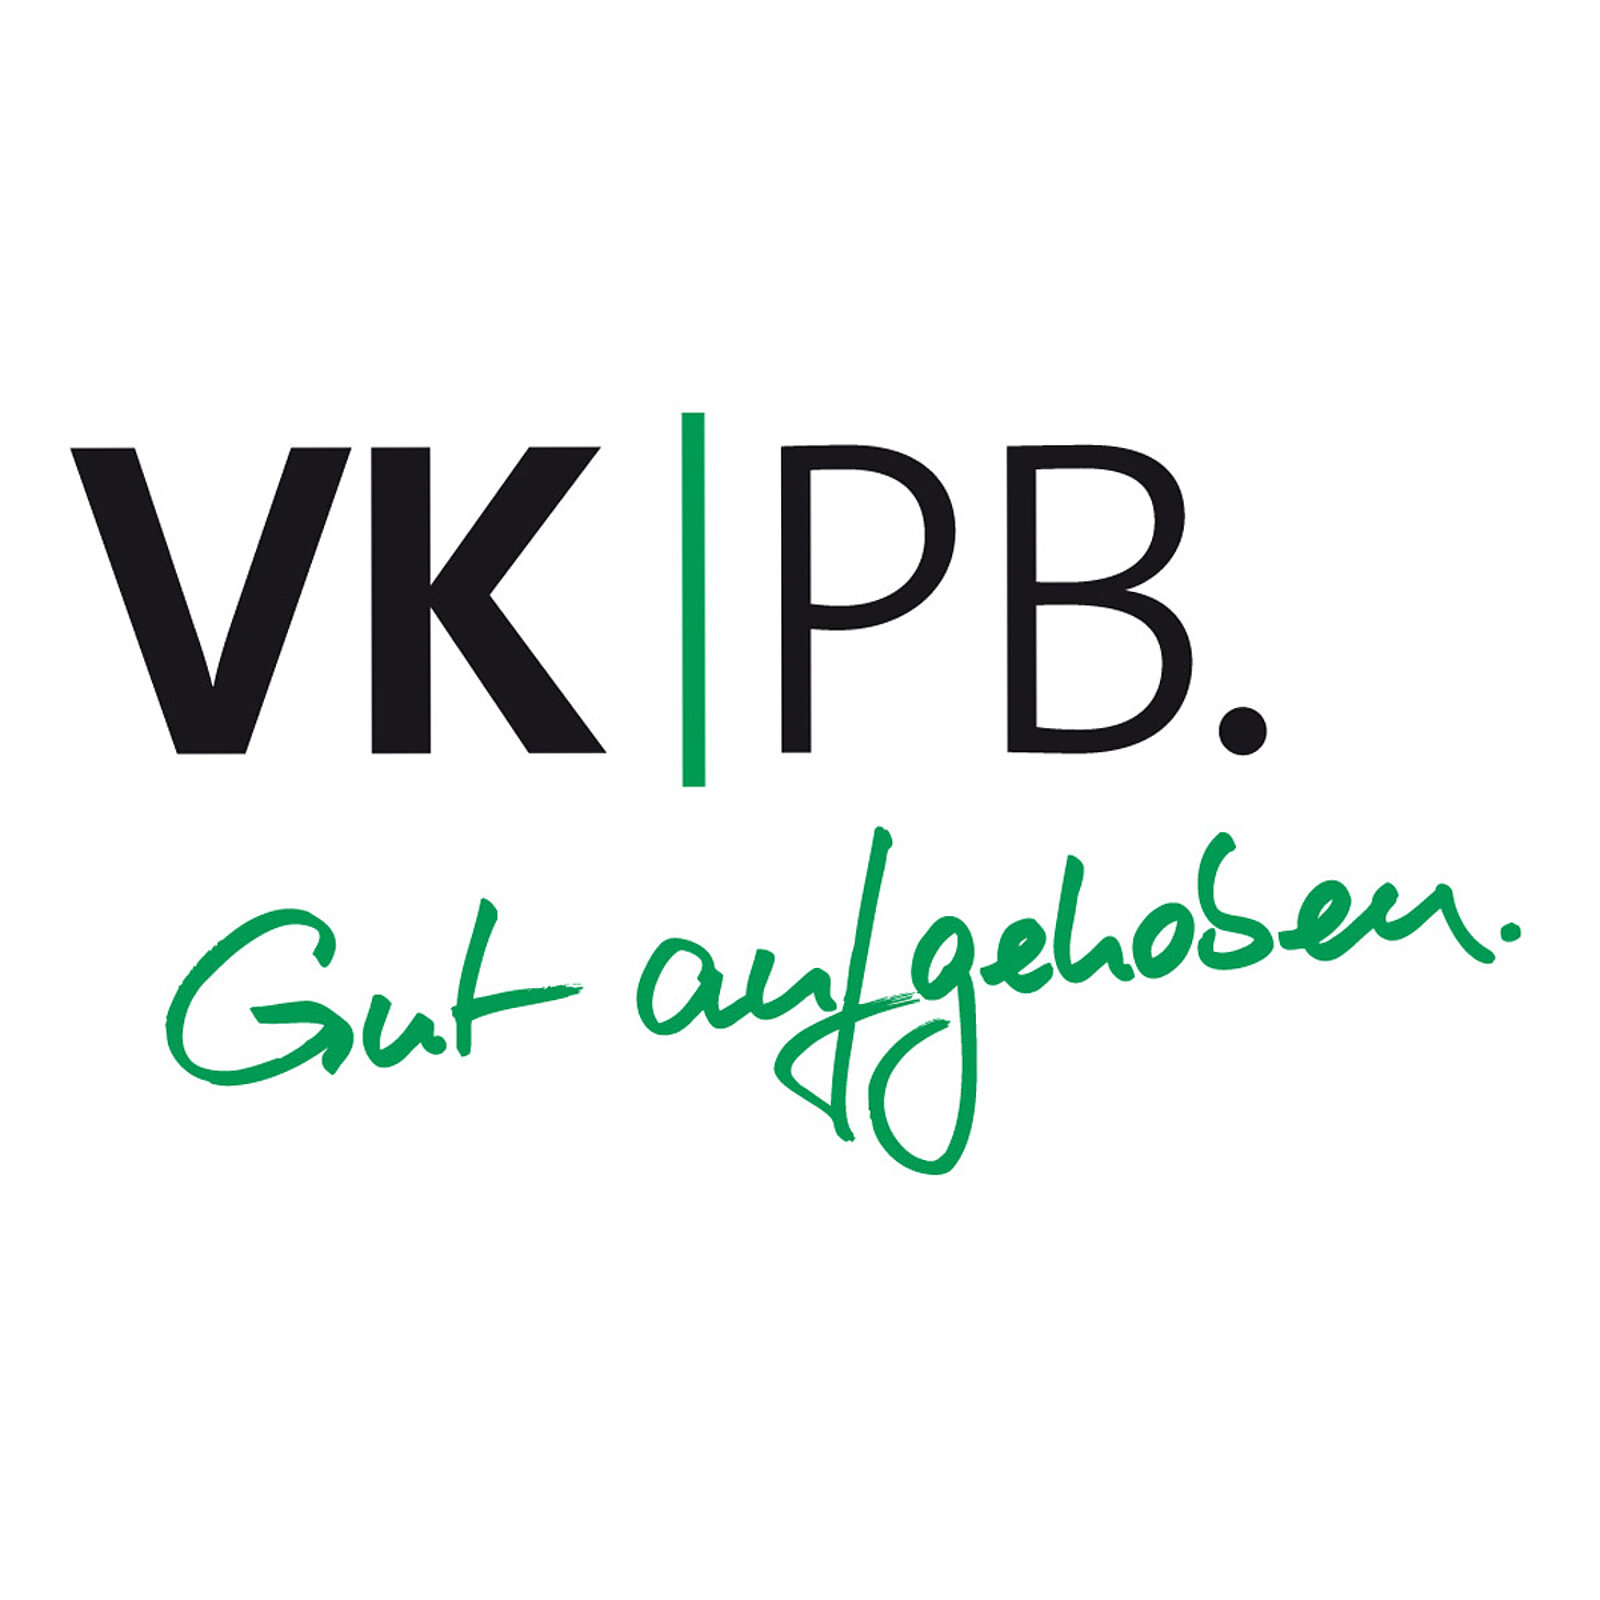 Logo der VKPB mit dem Slogan "Gut aufgehoben"